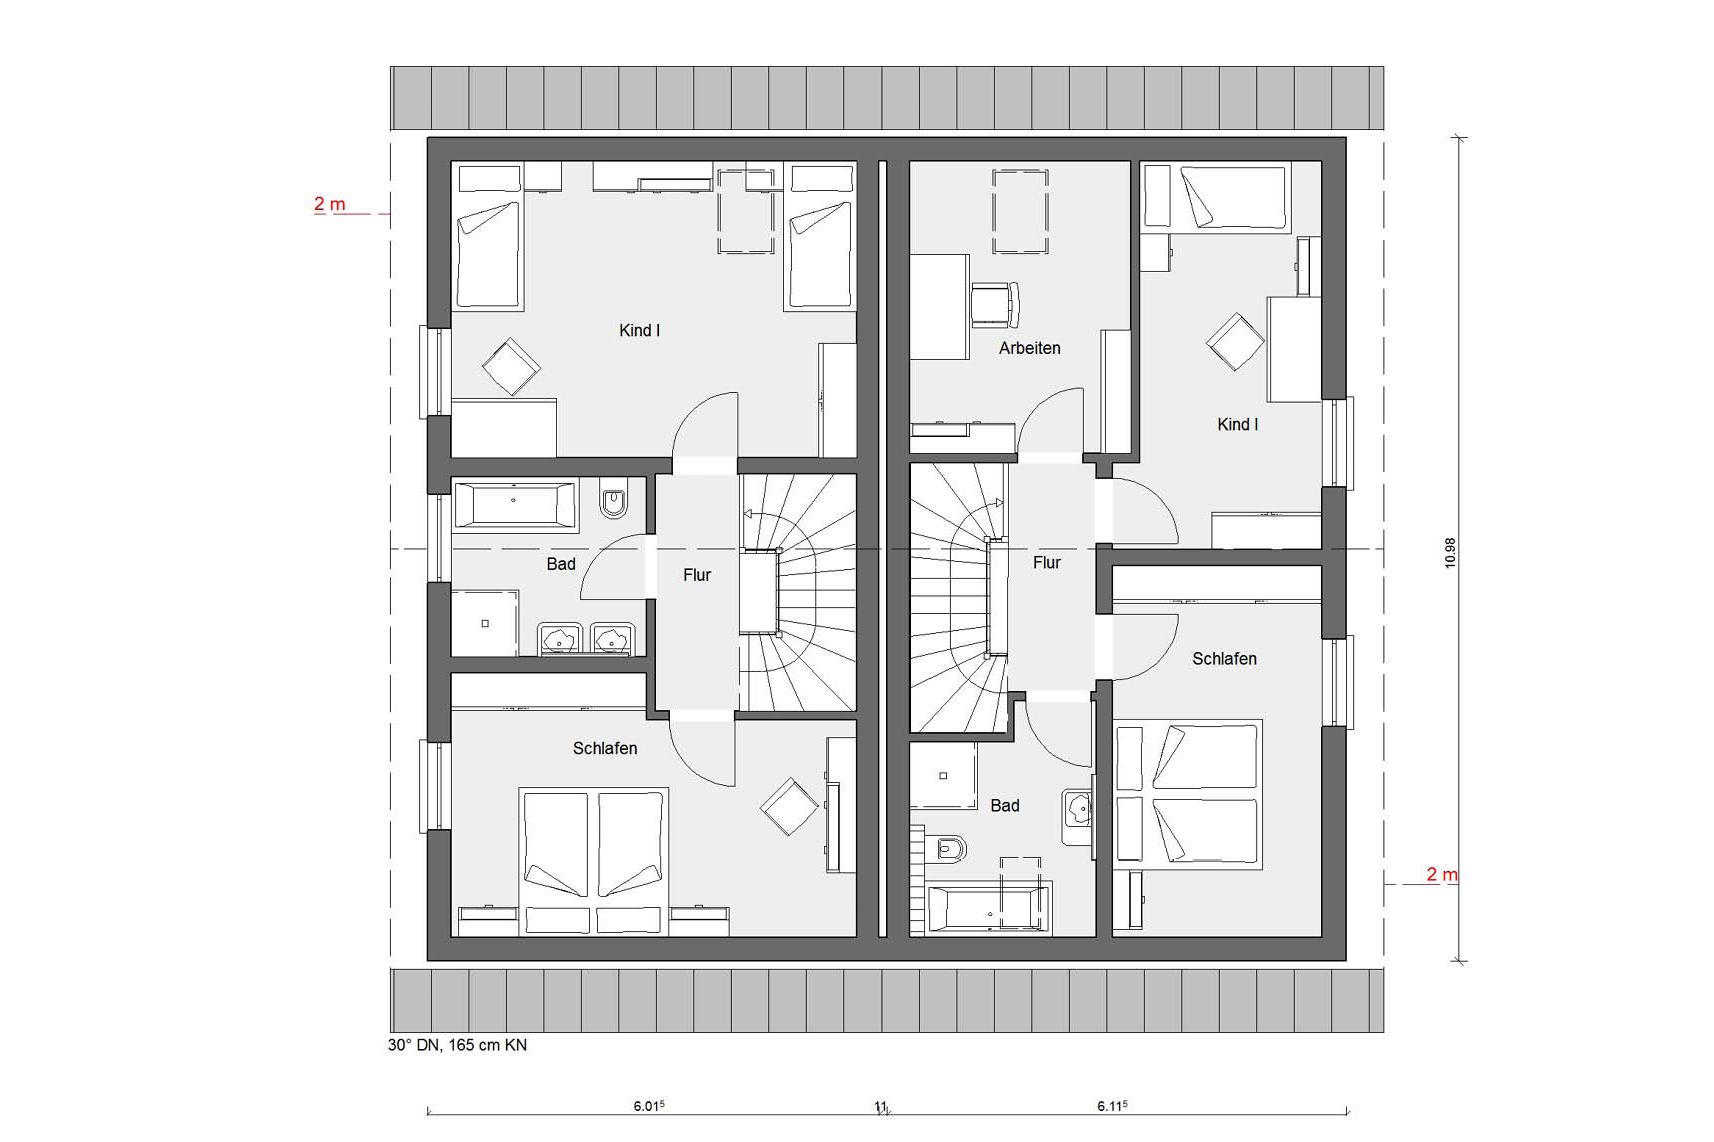 Floor plan attic D 15-106.1 / D 15-108.1 Small semi-detached house